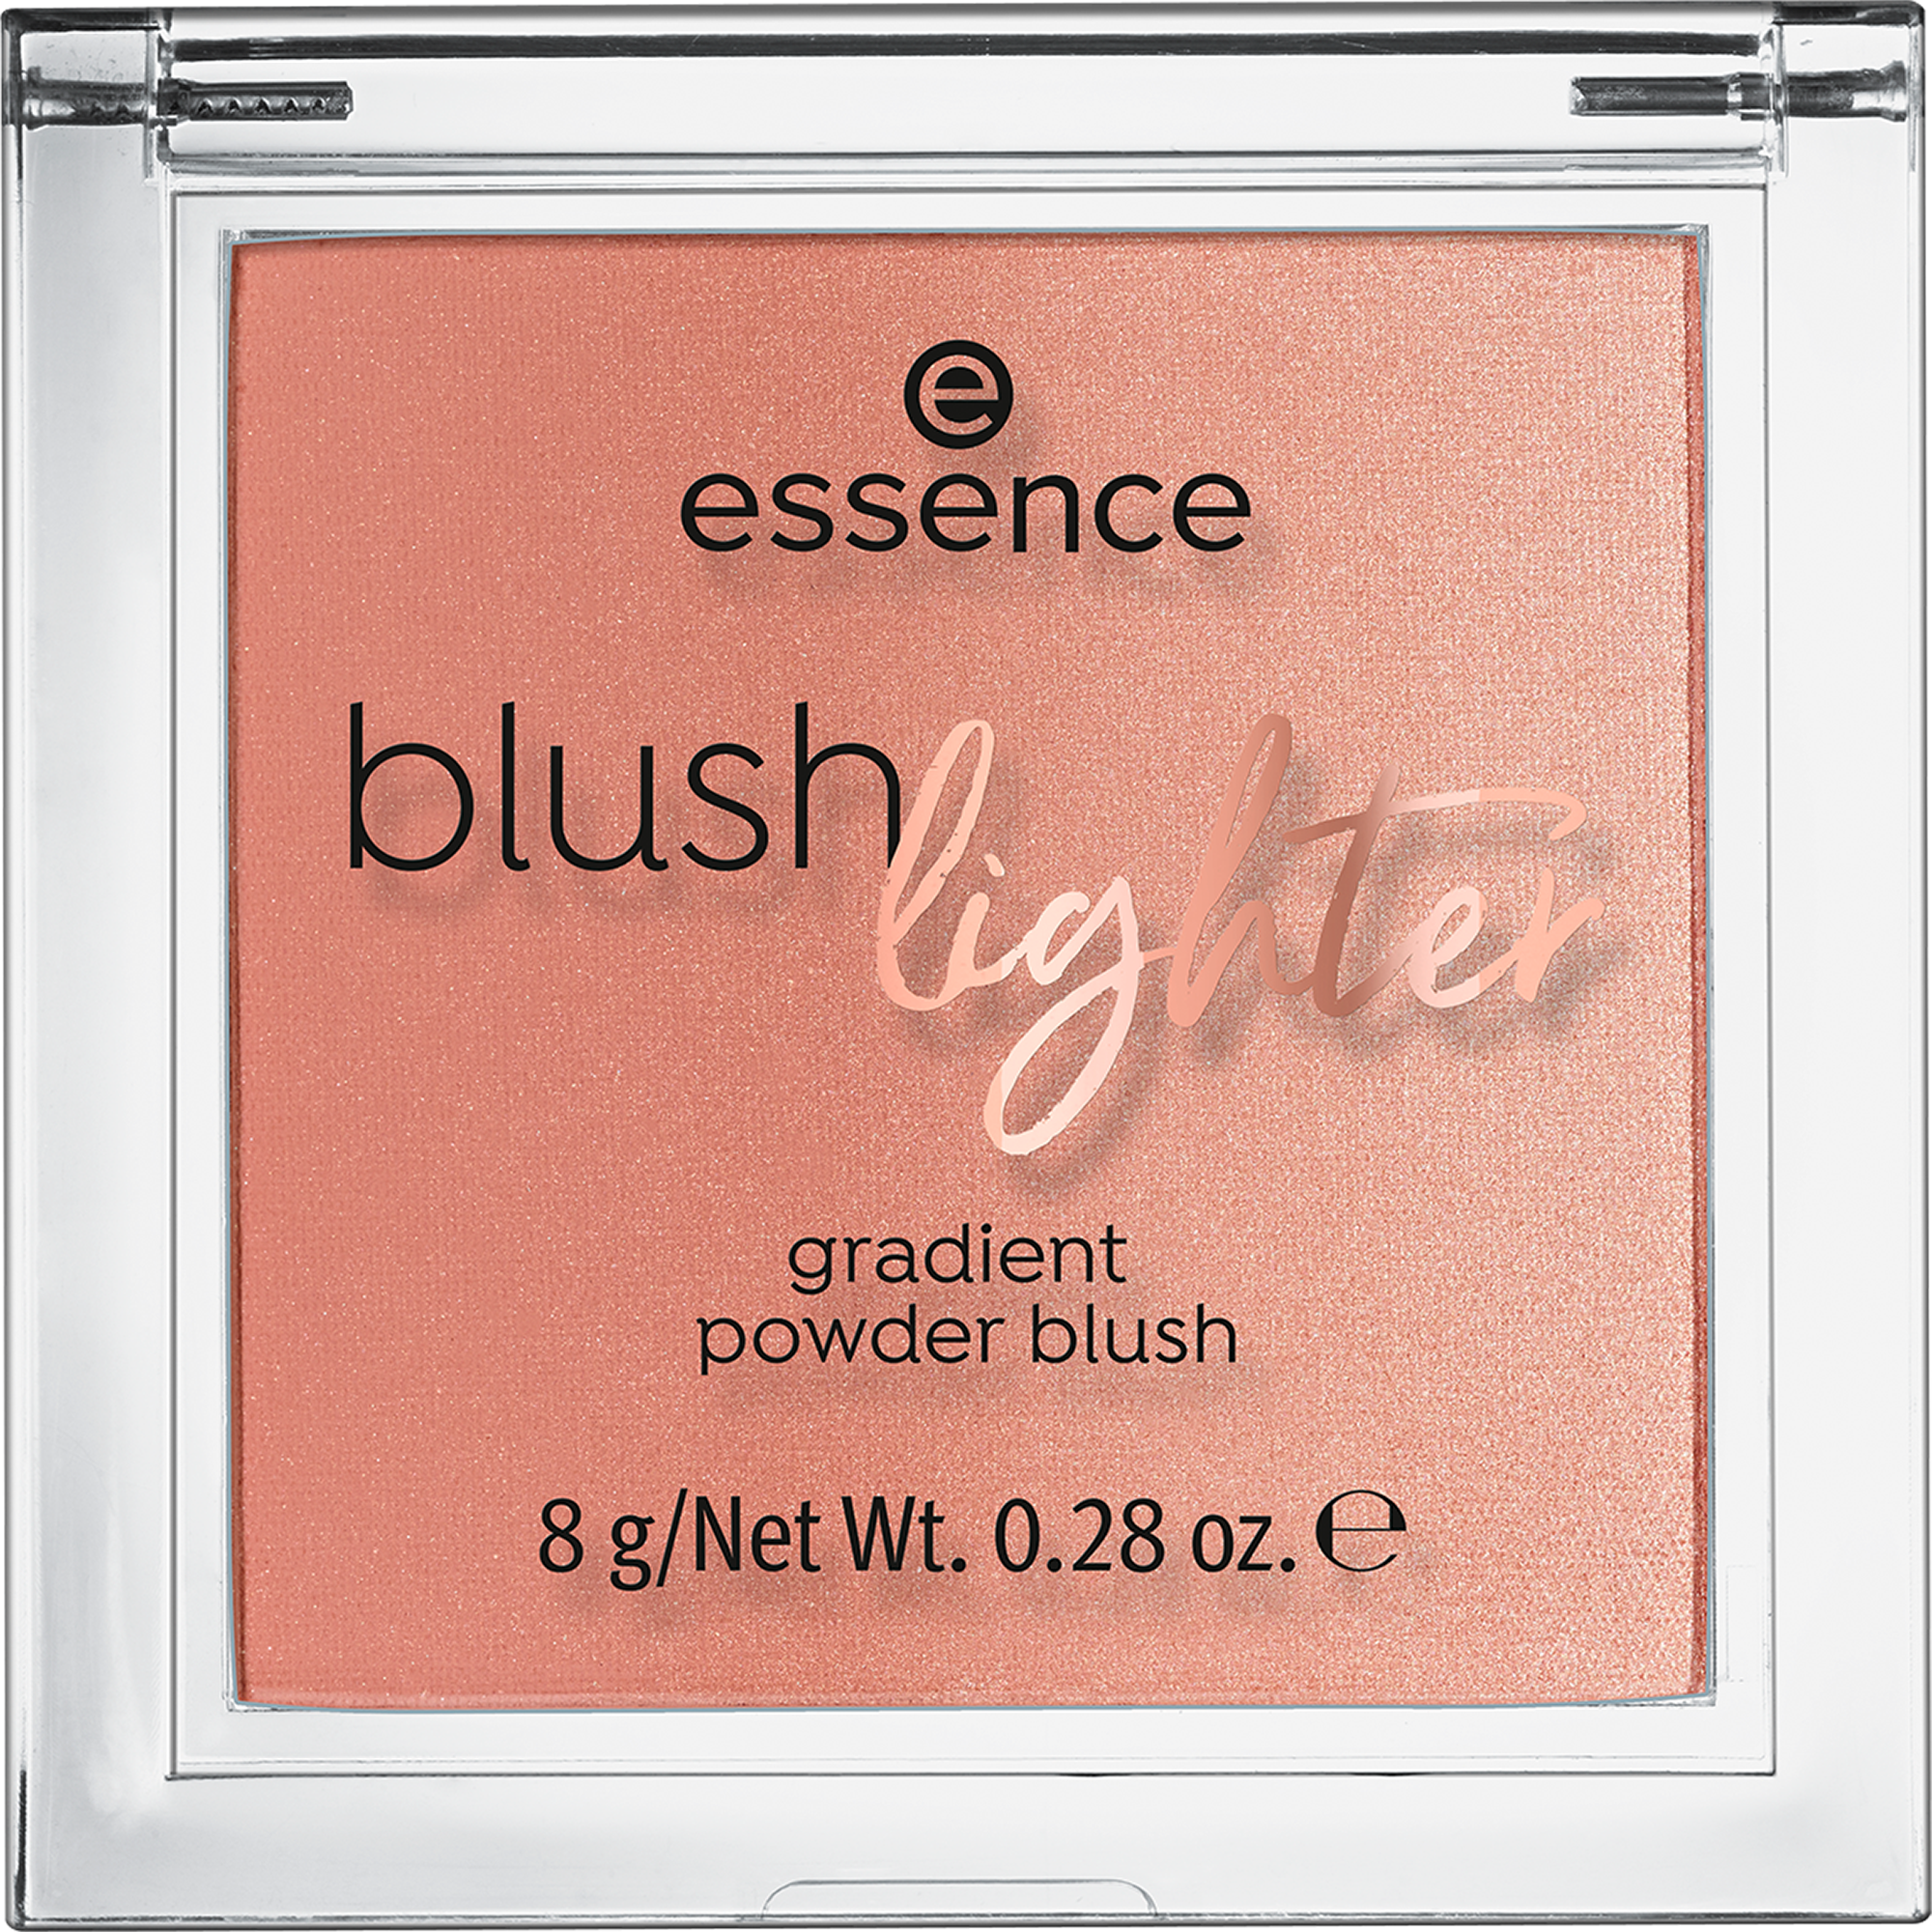 blush lighter